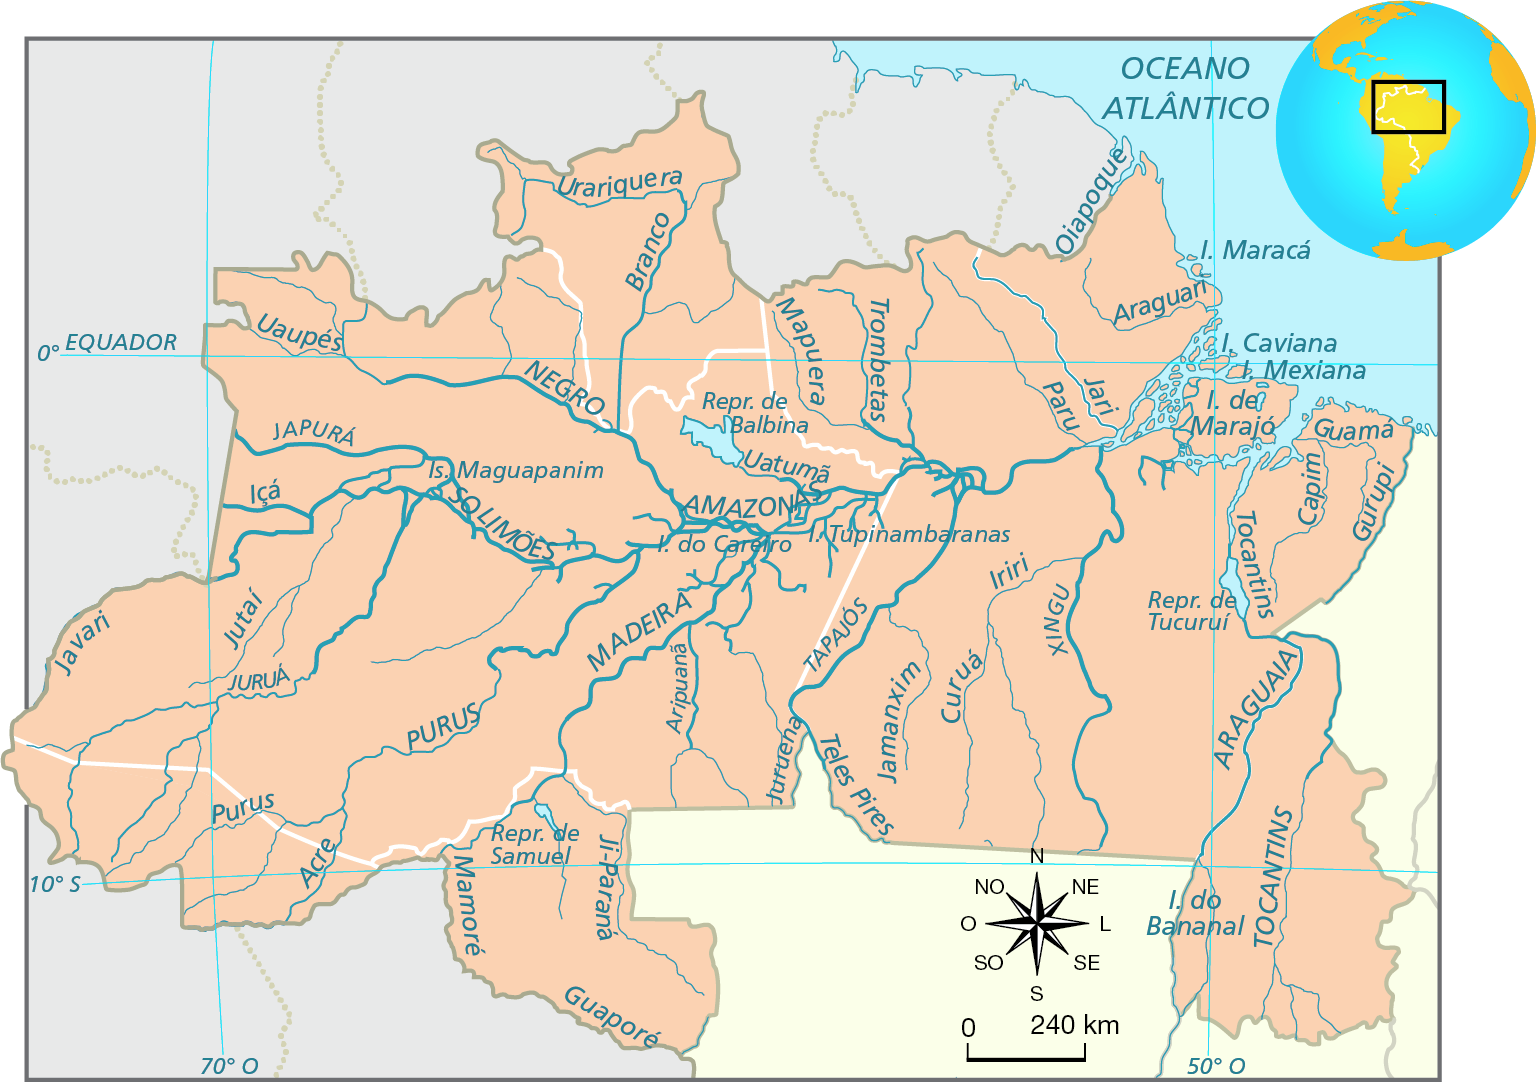 Mapa A. Região Norte: hidrografia. Diversos rios atravessam os estados da Região Norte. Os principais rios são: Negro, Solimões, Purus, Madeira, Amazonas, Araguaia, Tocantins, Tapajós, Japurá Xingu. Outros rios são: Acre, Jutaí, Javari, Juruá, Ji-Paraná, Mamoré, Içá, Uaupés, Branco, Urariquera, Mapuera, Trombetas, Paru, Jari, Oiapoque, Araguari, Iriri, Curuá, Jamanxim, Juruena, Aripuanã, Teles Pires, Guamã, Gurupi, Capim, Uatumã. Há represas indicadas: Represa de Samuel, Represa de Balbina, Represa de Tucuruí. 
Abaixo, rosa dos ventos e escala de 0 a 240 quilômetros.